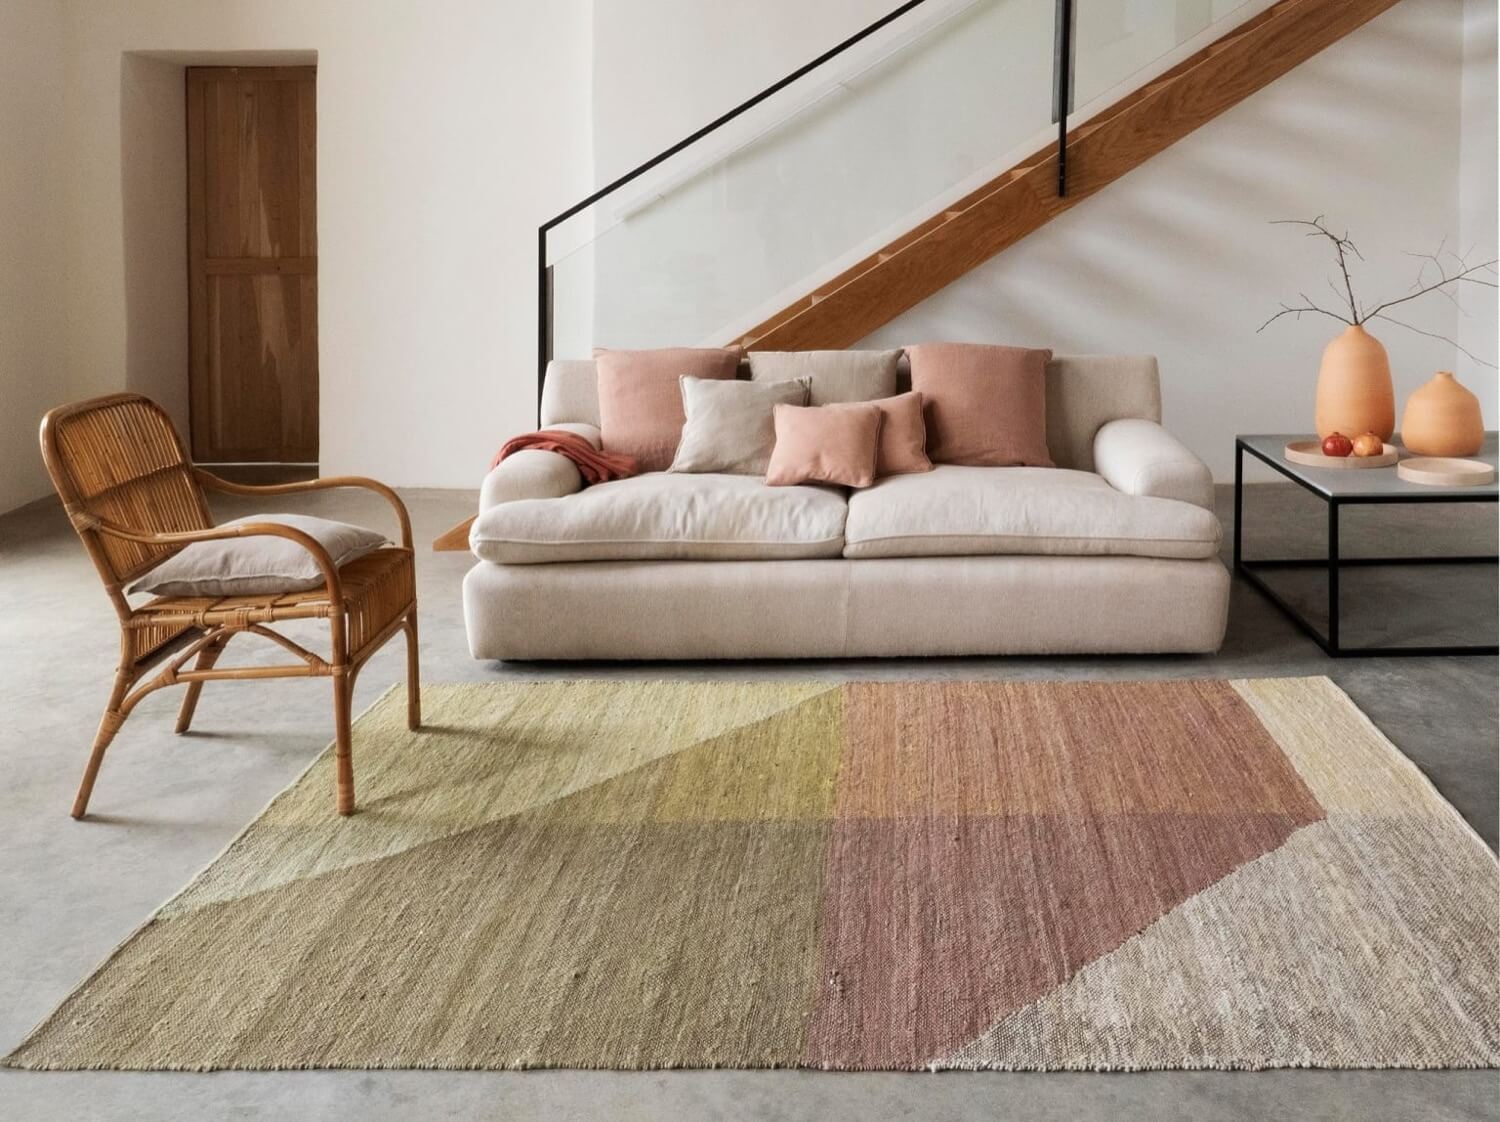 Sofá y alfombra de colores cálidos